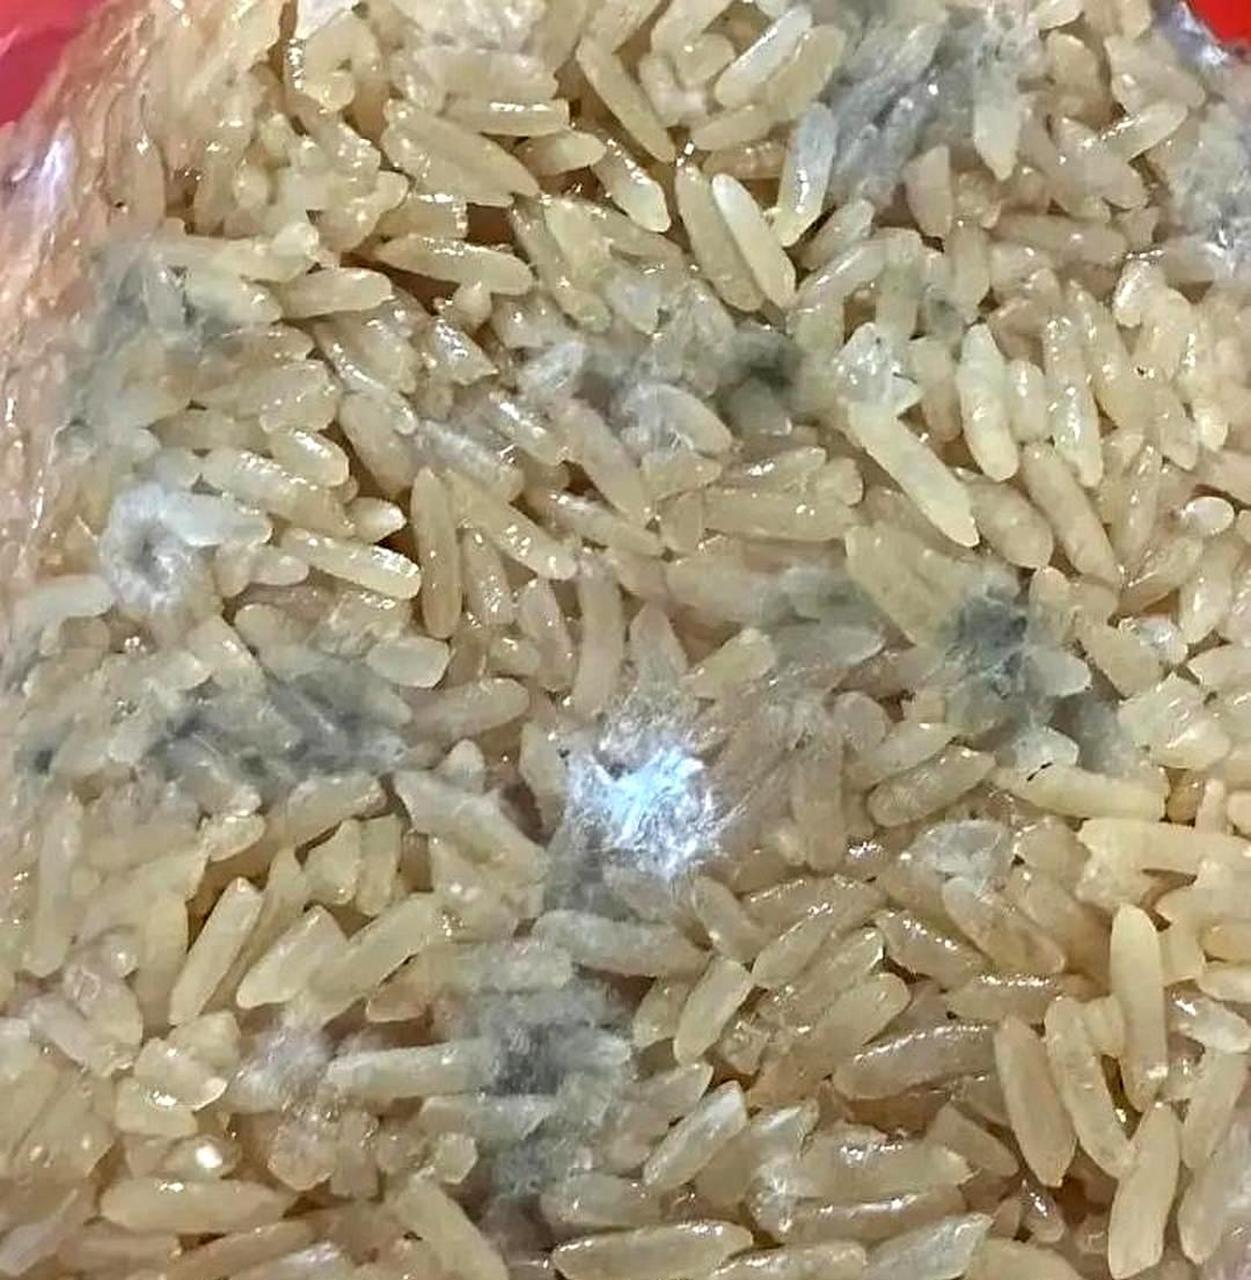 我妈把米都发霉了,还要热给我吃,我该怎么办?